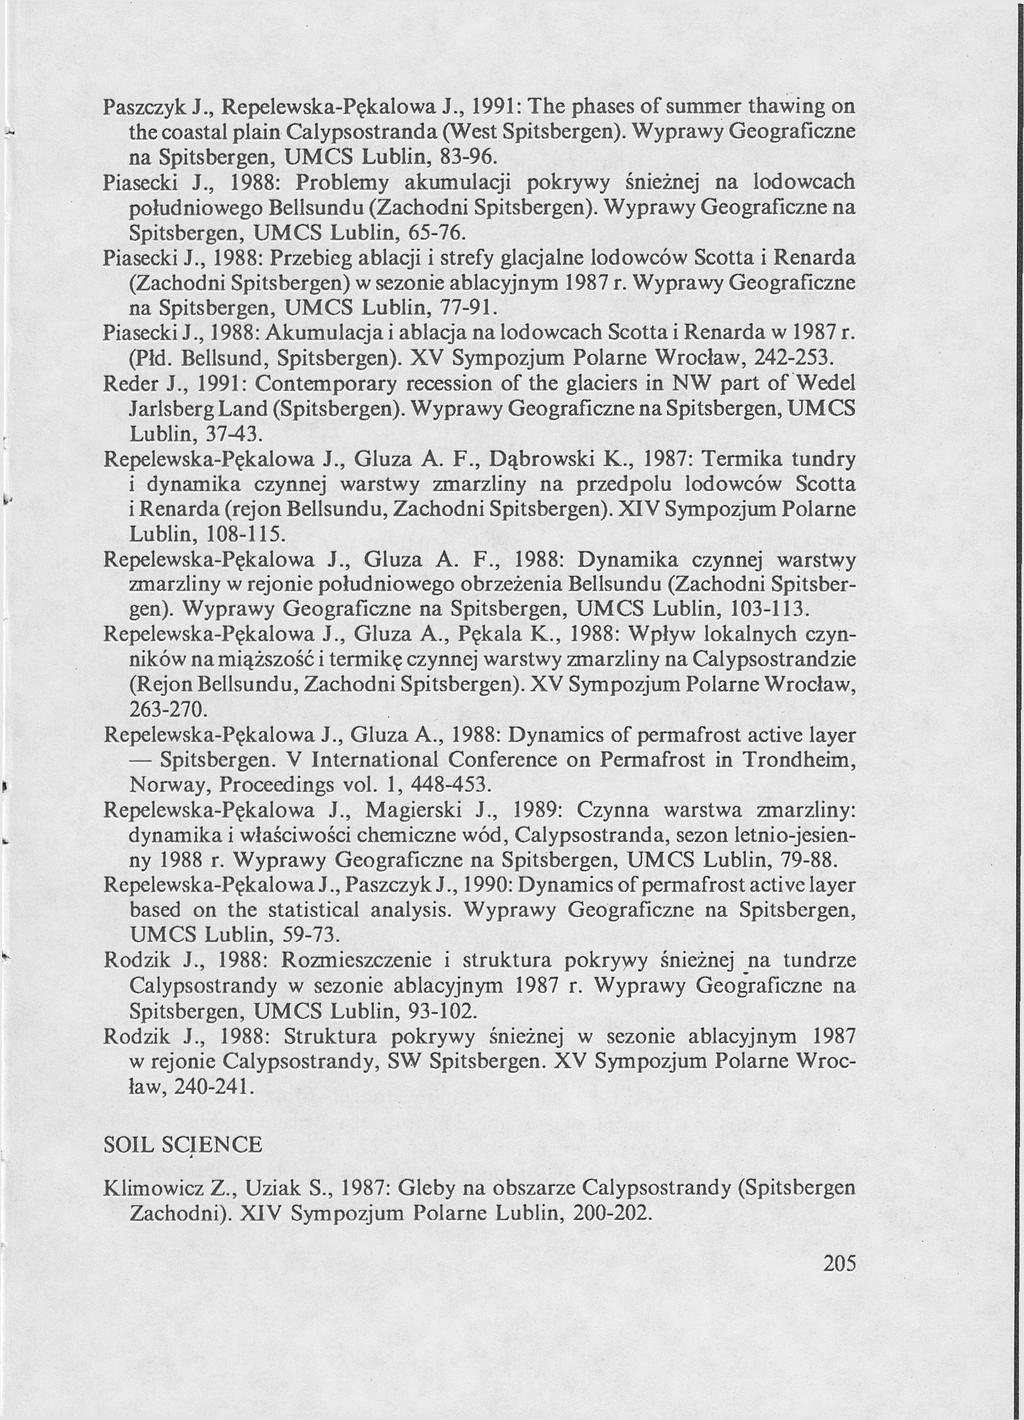 Paszczyk J., Repelewska-Pękalowa J., 1991: The phases of summer thawing on the coastal plain Calypsostranda (West Spitsbergen). Wyprawy Geograficzne na Spitsbergen, UMCS Lublin, 83-96. Piasecki J.